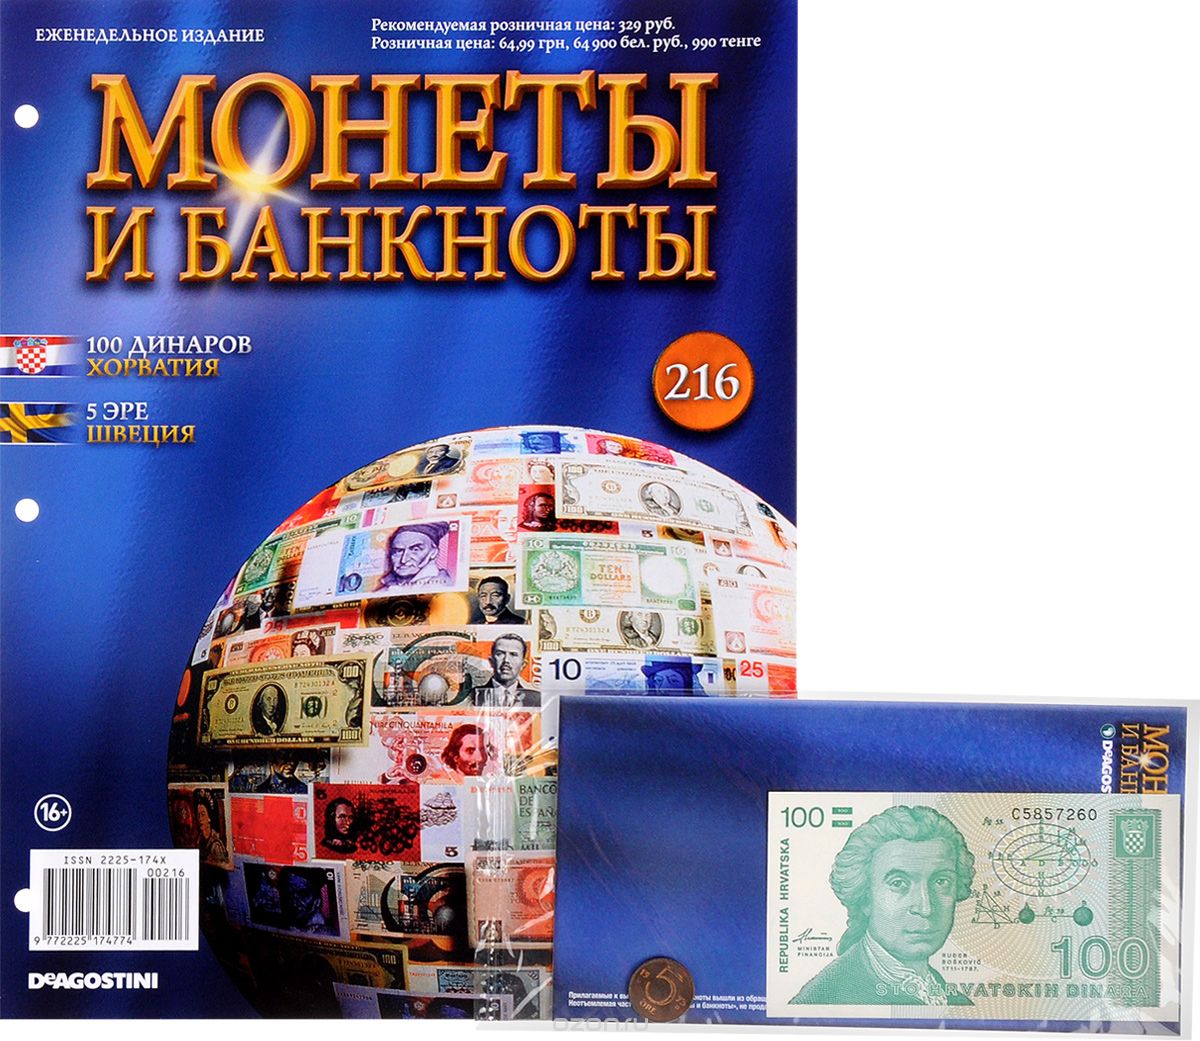 Скачать книгу "Журнал "Монеты и банкноты" №216"